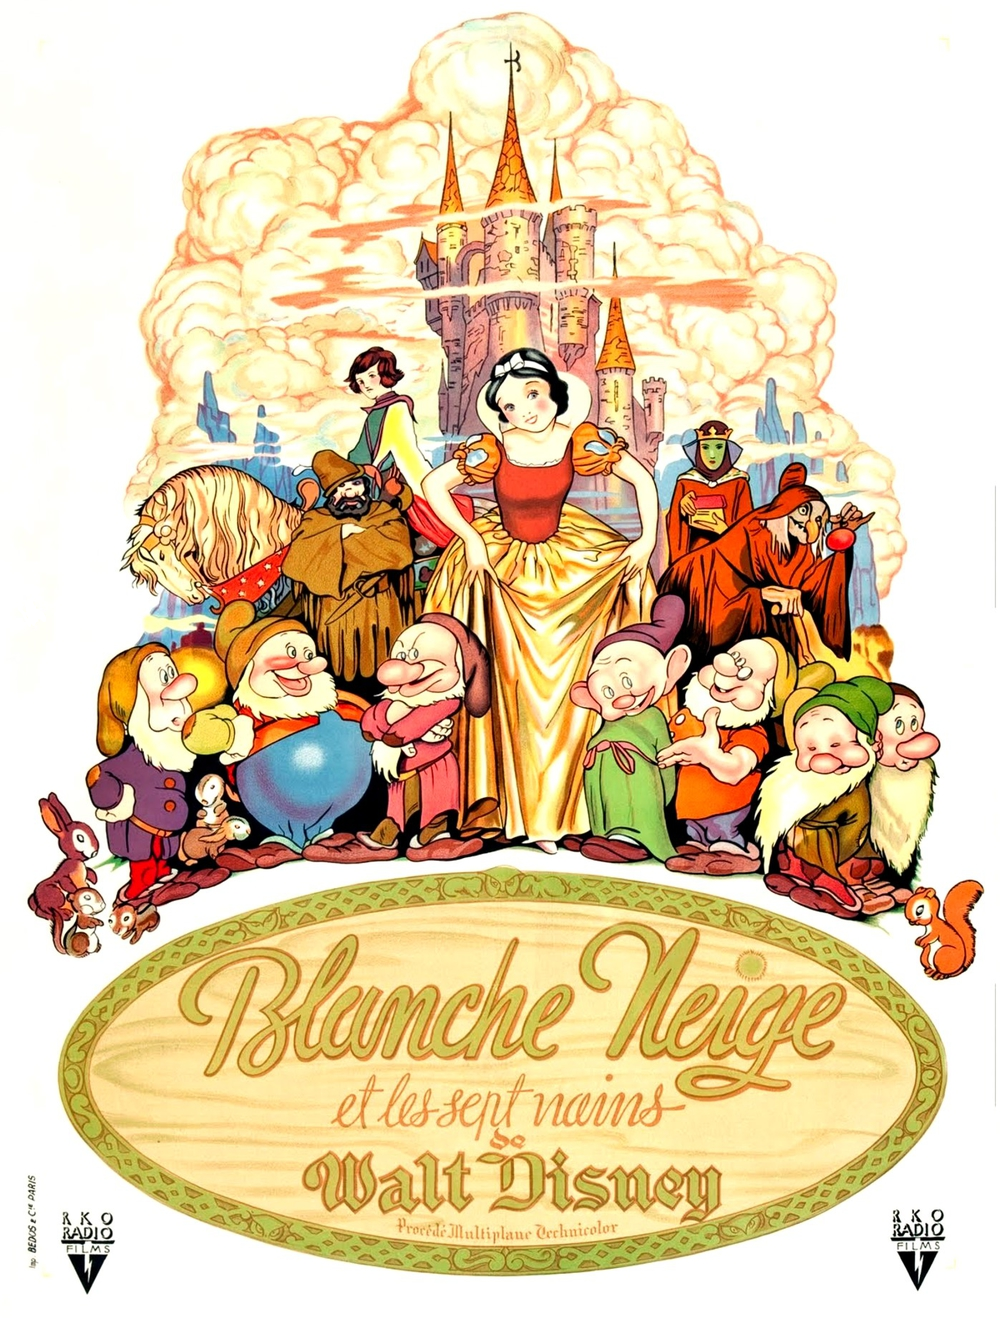 Blanche-Neige et les Sept Nains (David Hand, 1937) - La